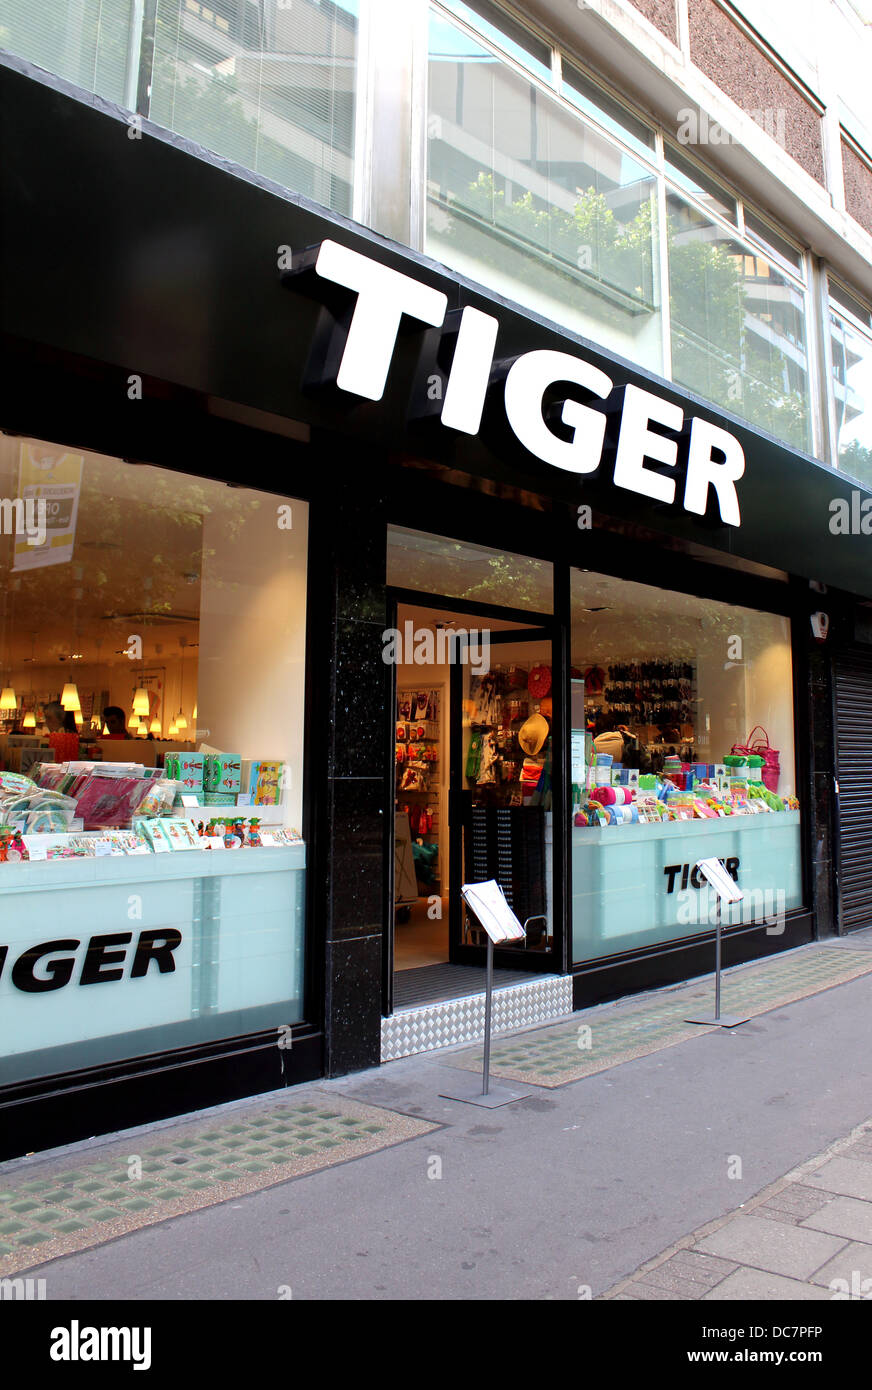 Tiger réfrigération Photo Imprimé store occultant stores faits sur mesure 